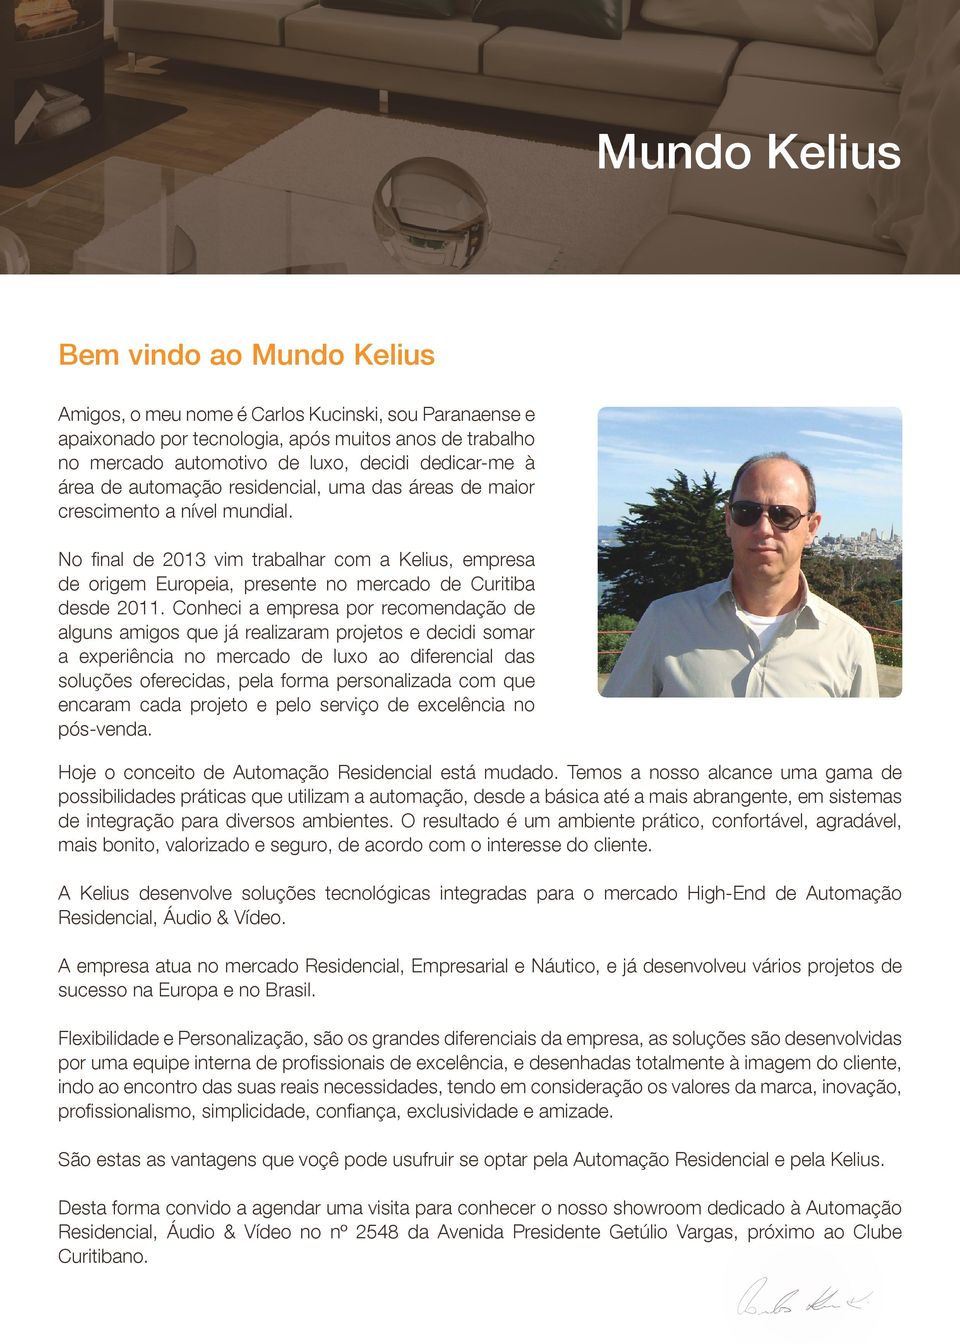 No final de 2013 vim trabalhar com a Kelius, empresa de origem Europeia, presente no mercado de Curitiba desde 2011.